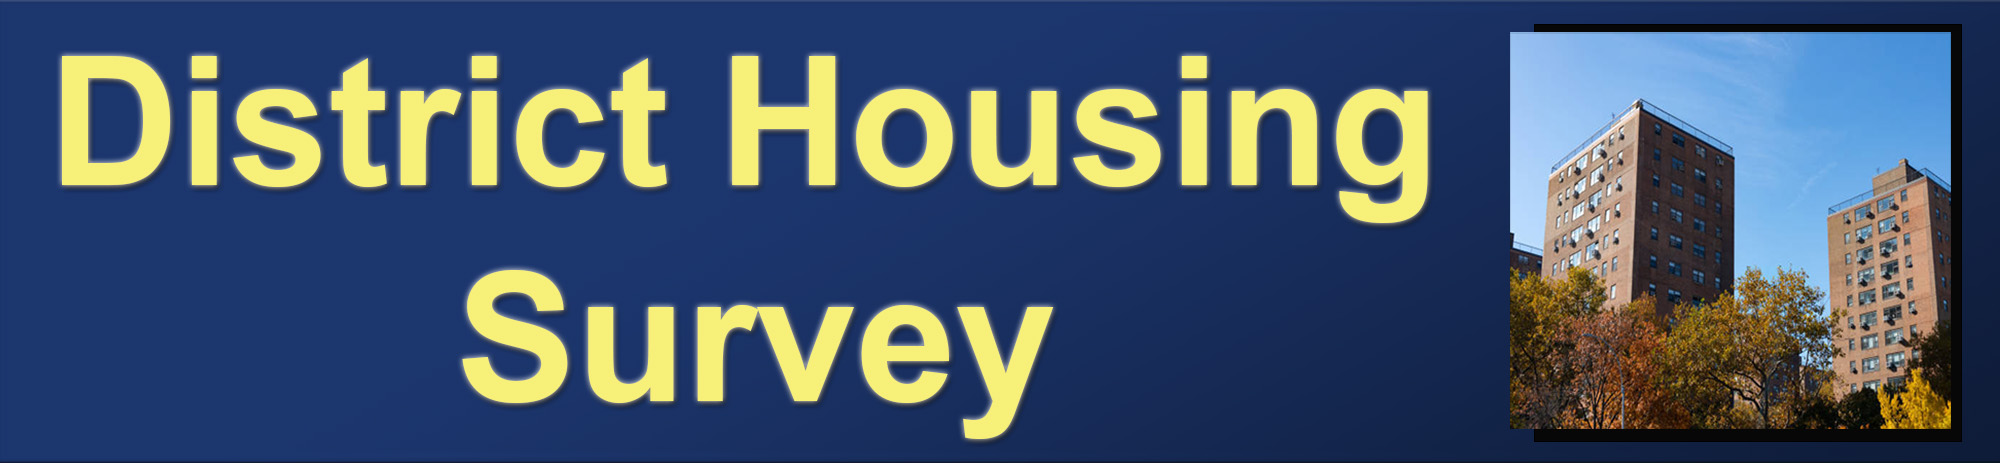 District Housing Survey